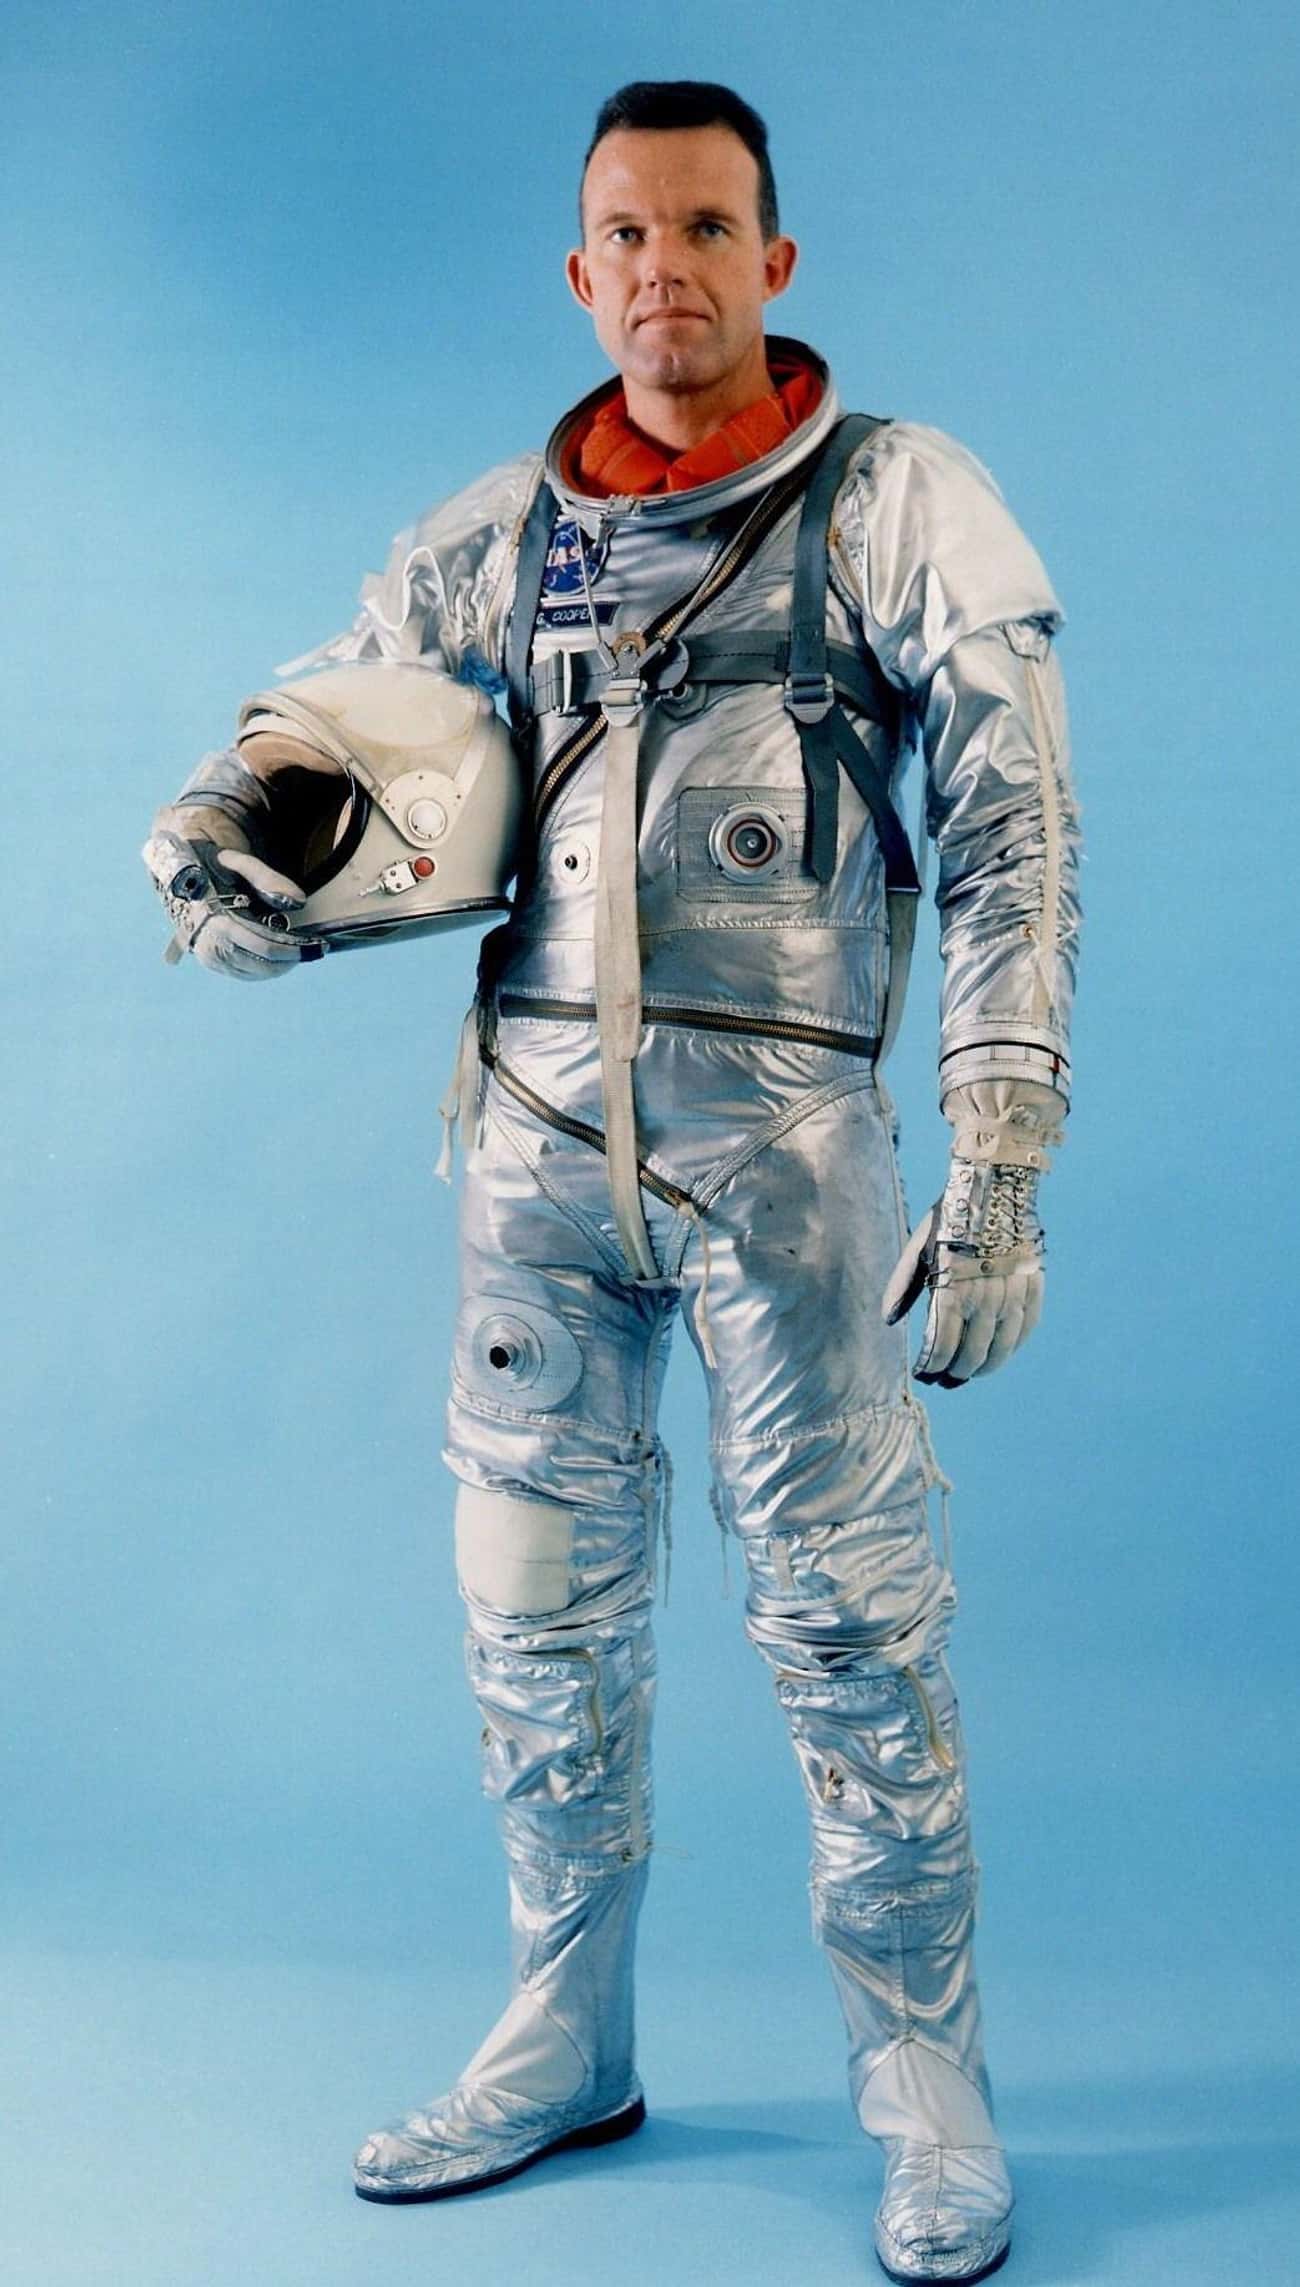 1961-63: Mercury Space Suit, United States